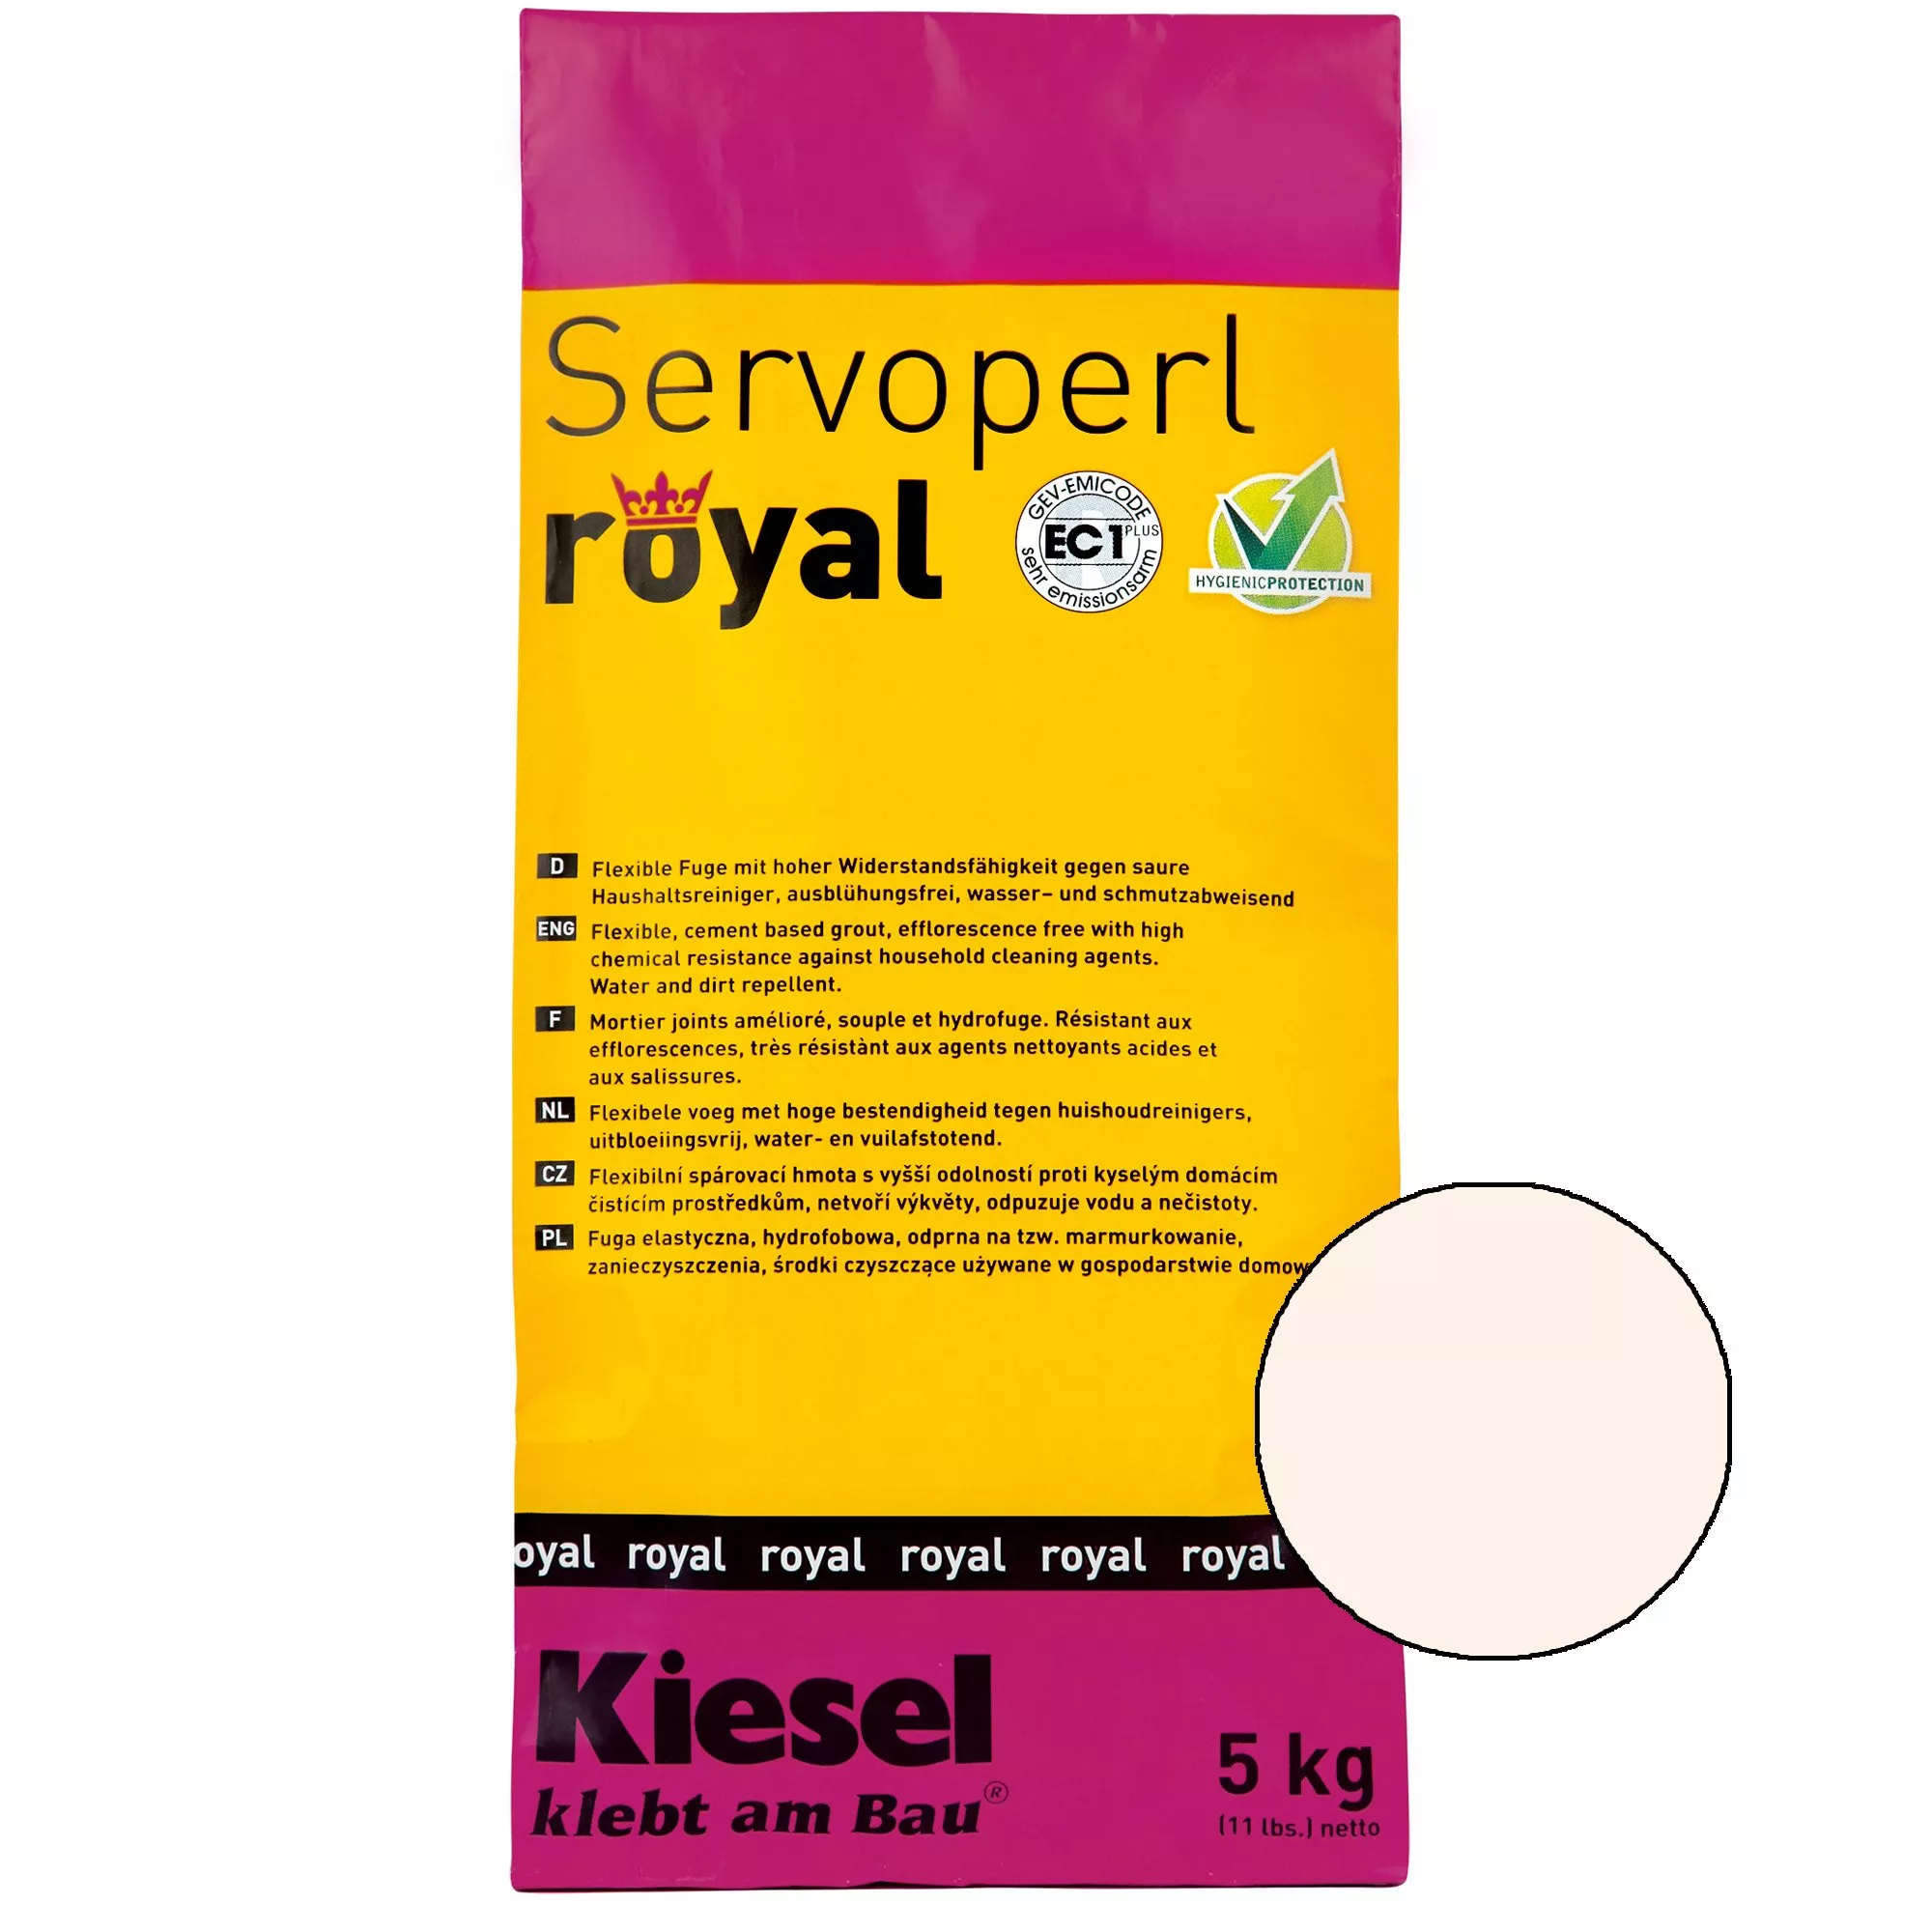 Kiesel Servoperl royal - Flexible, wasser- und schmutzabweisende Fuge (5KG Pergamon)